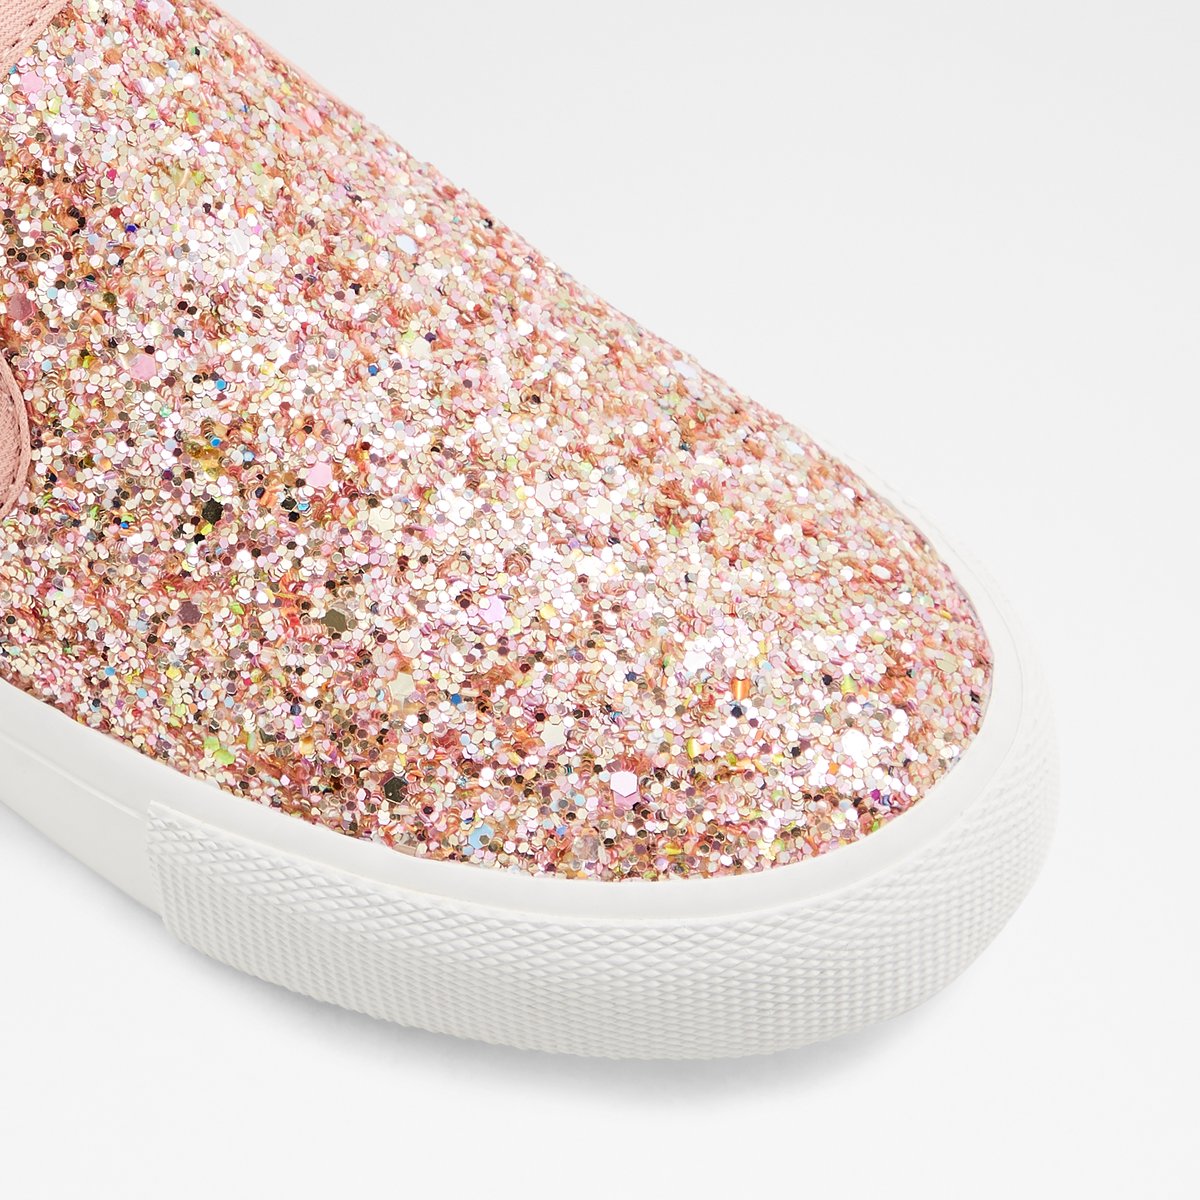 aldo sparkly shoes